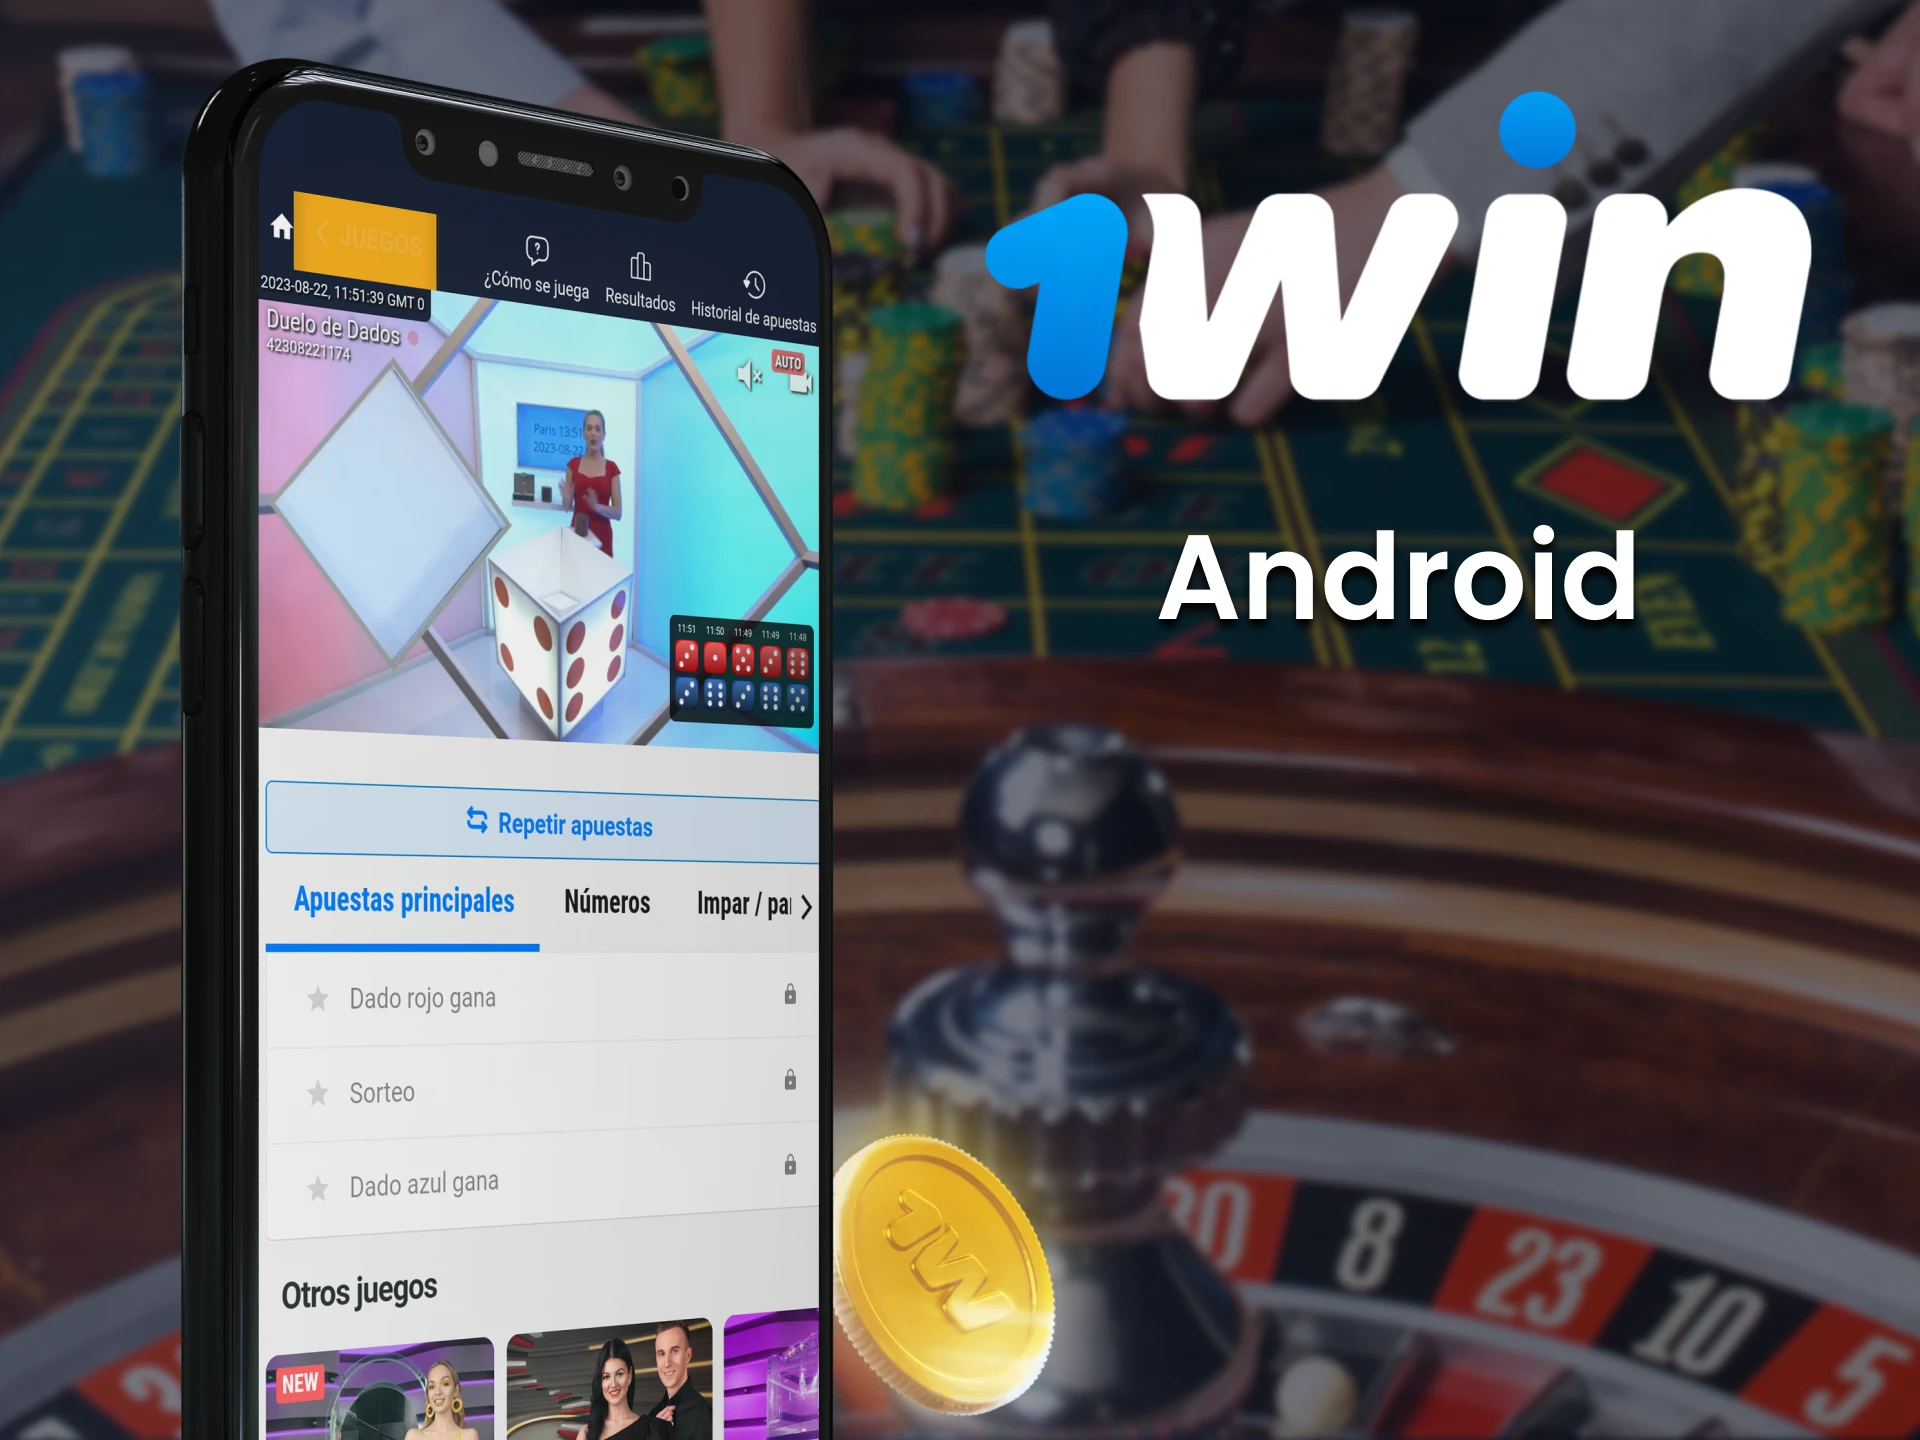 Apueste en el deporte Twain a través de la aplicación 1win para Android.